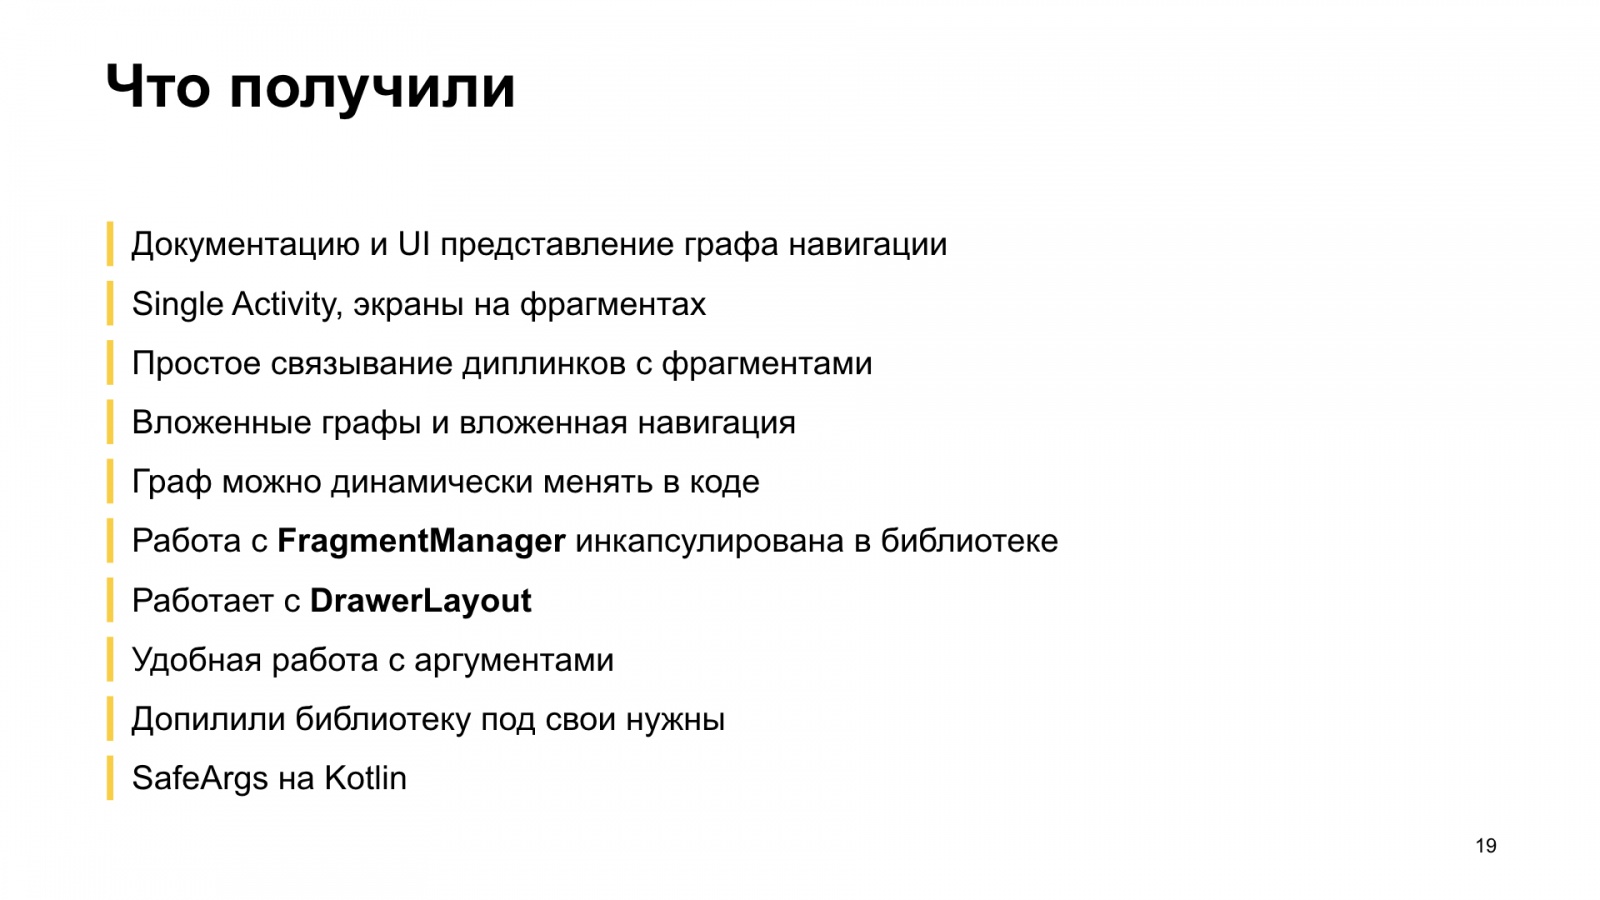 Как мы внедряли навигацию из Jetpack в боевое приложение. Доклад Яндекс.Еды - 20